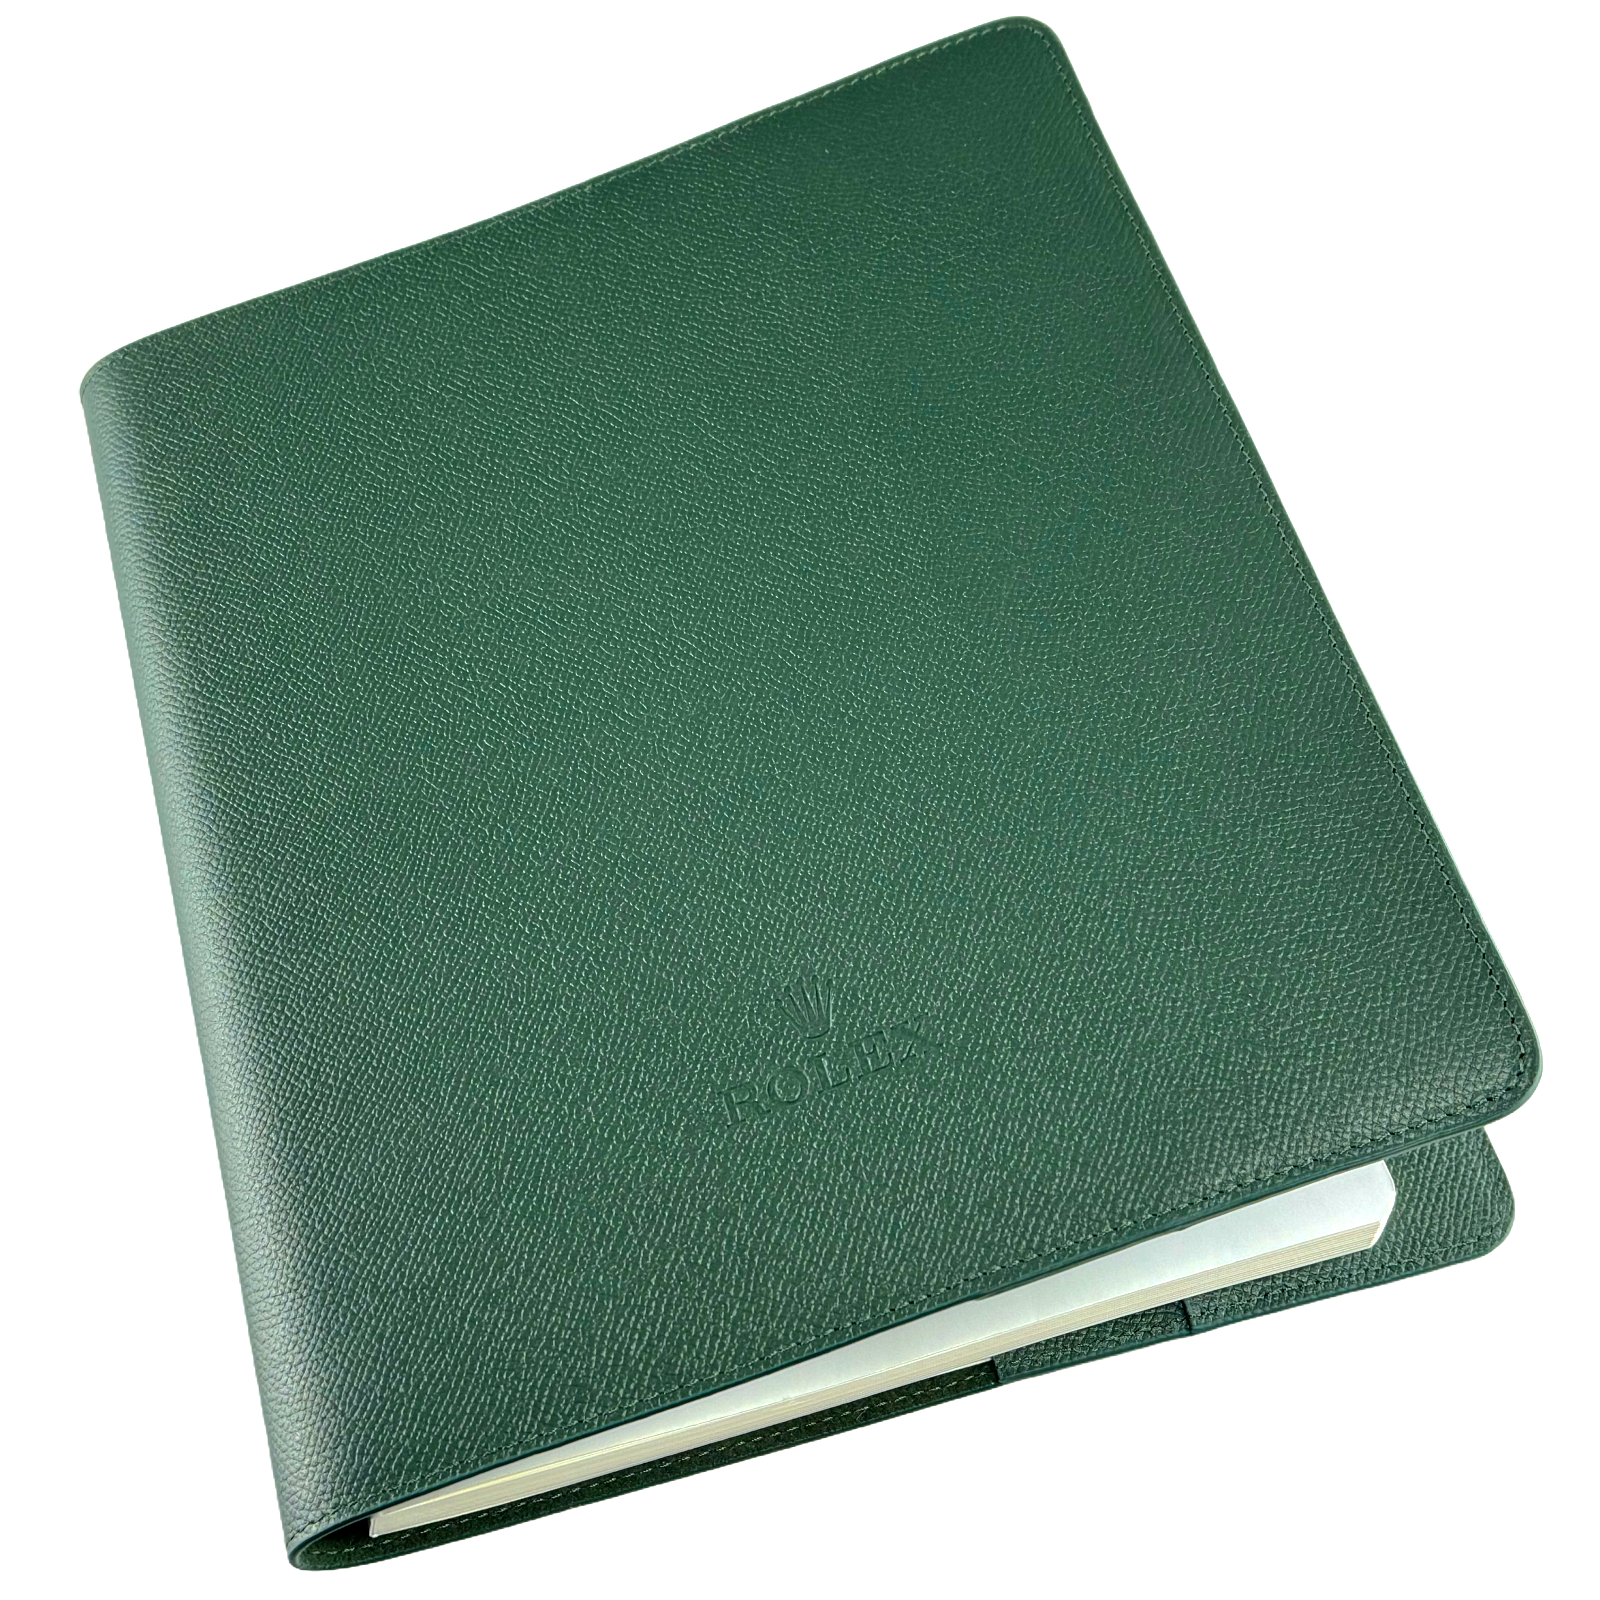 Rolex Notizbuch Planer Organizer Schreibwaren Schreibbuch notebook book Grün Green Leder Leather